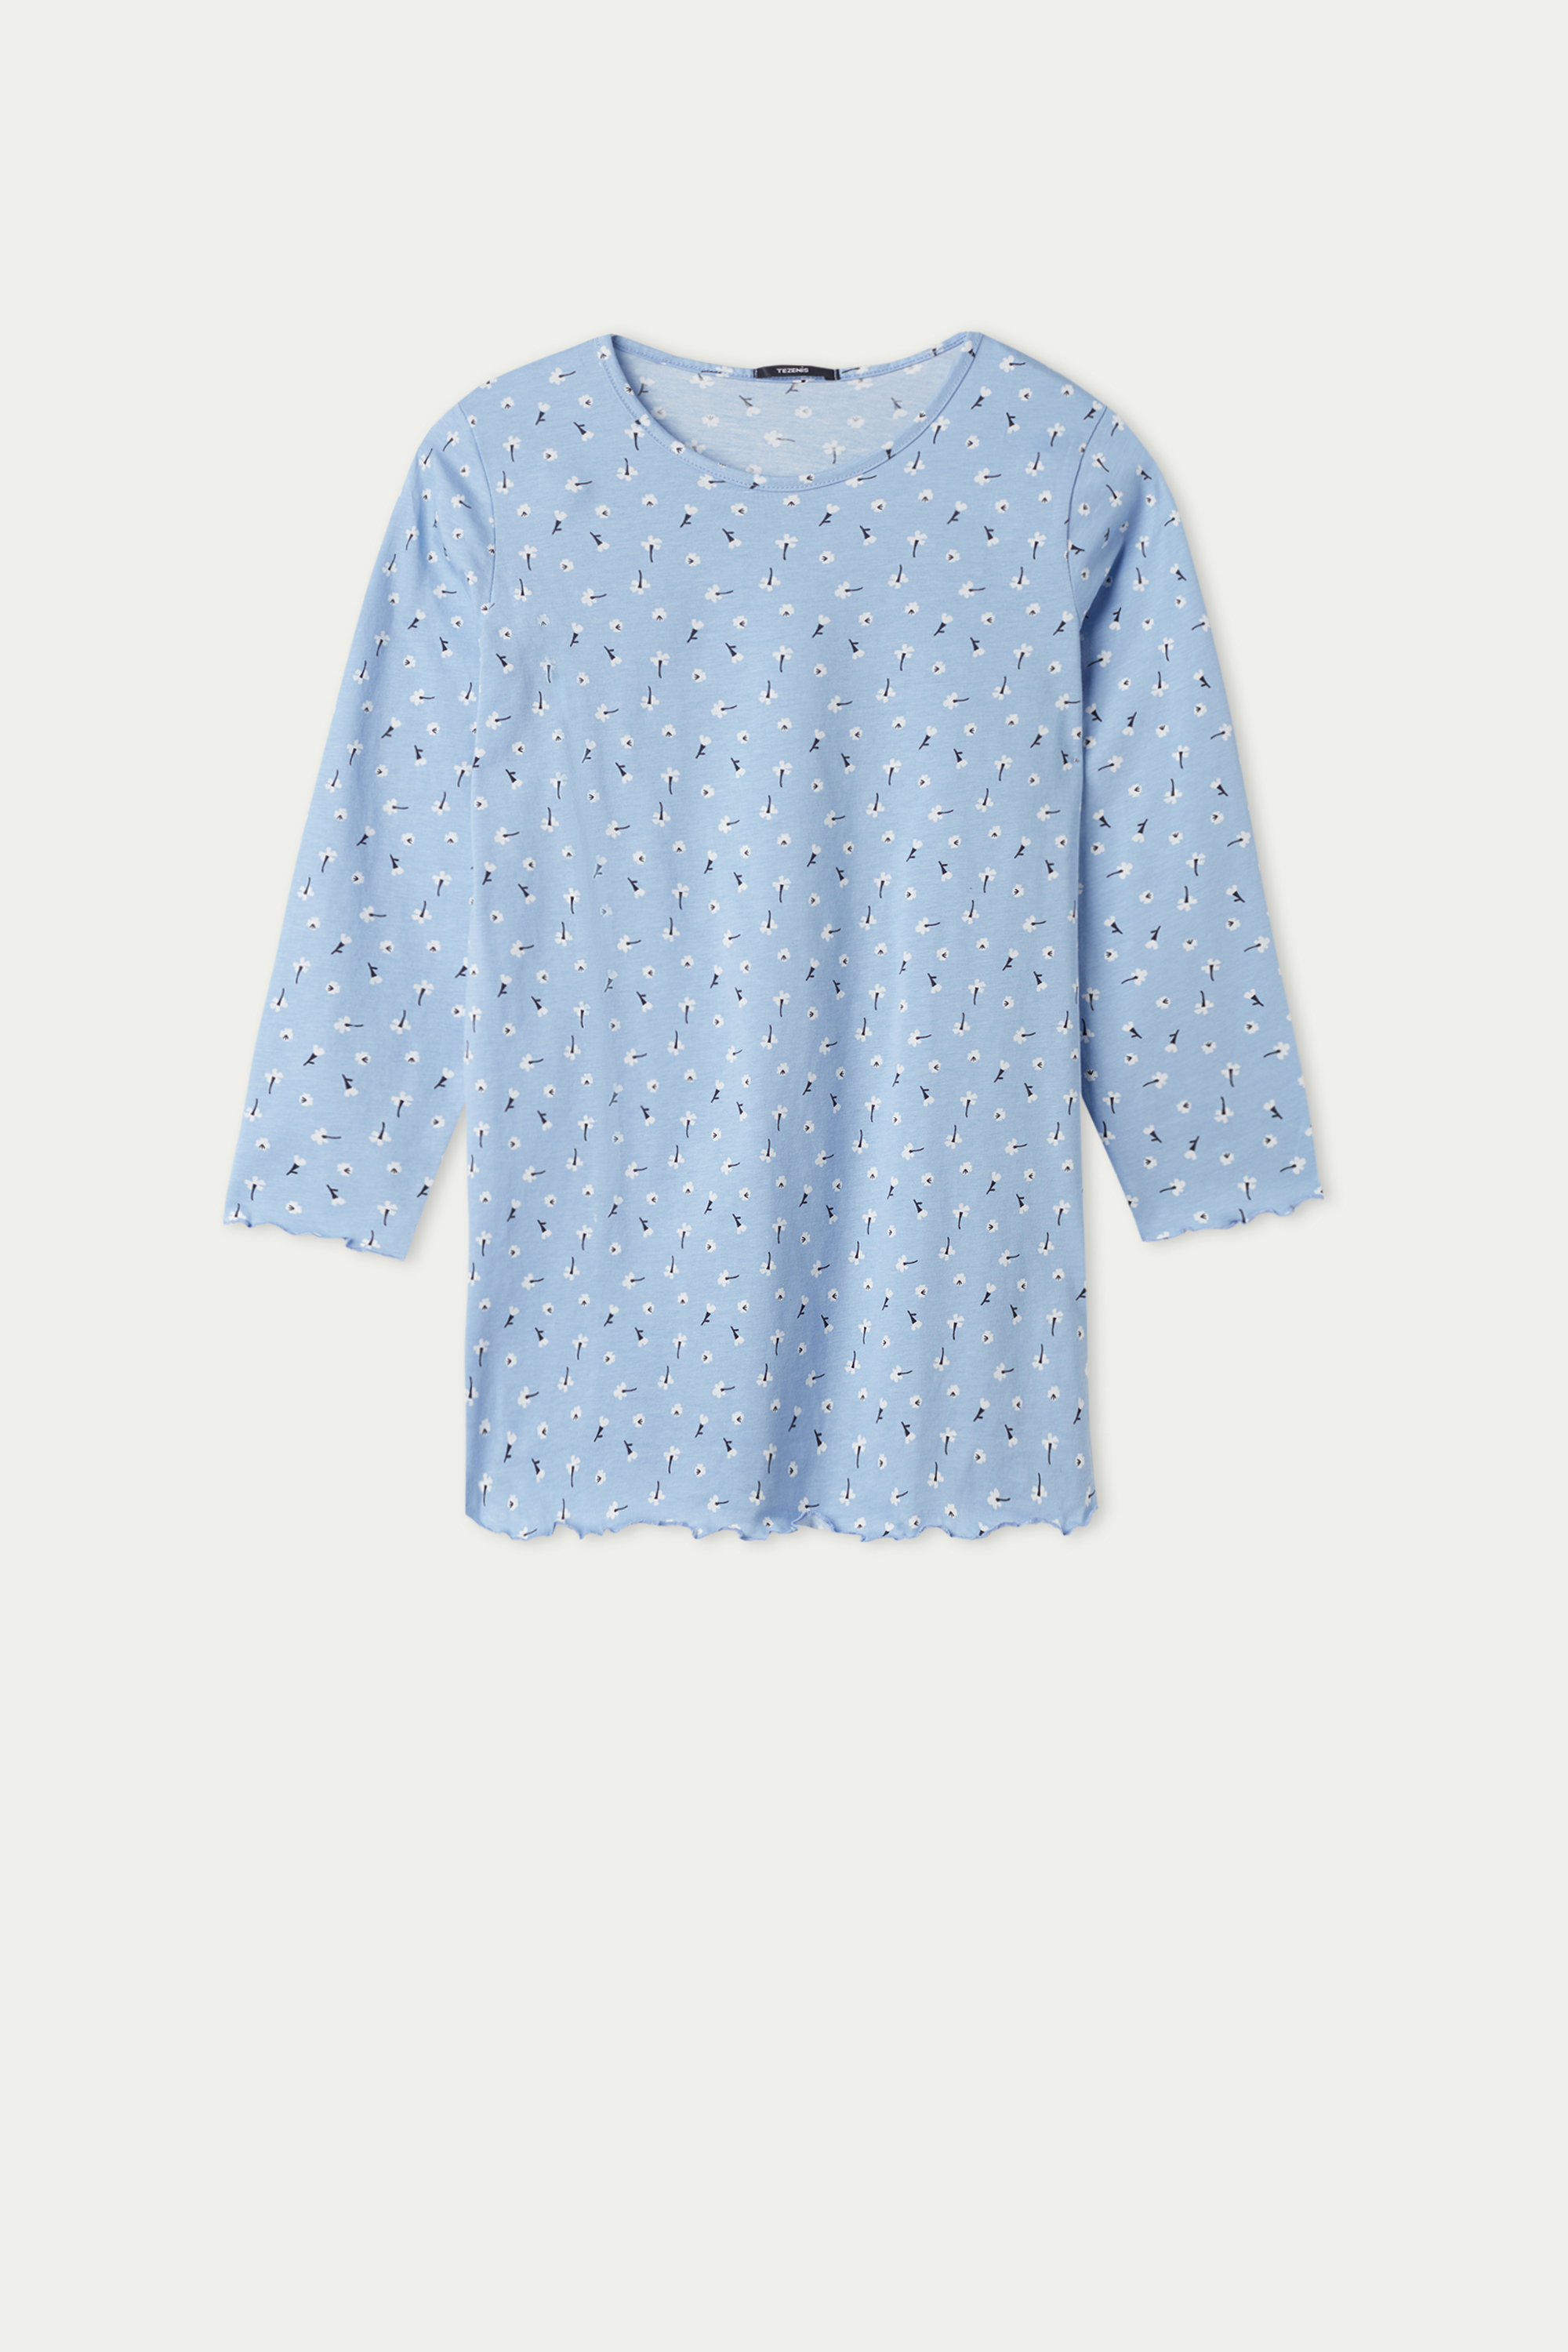 Camicia da Notte Bimba Manica Lunga Cotone Micro Fiori Bambina Tezenis Bambina Abbigliamento Abbigliamento per la notte Pigiami 